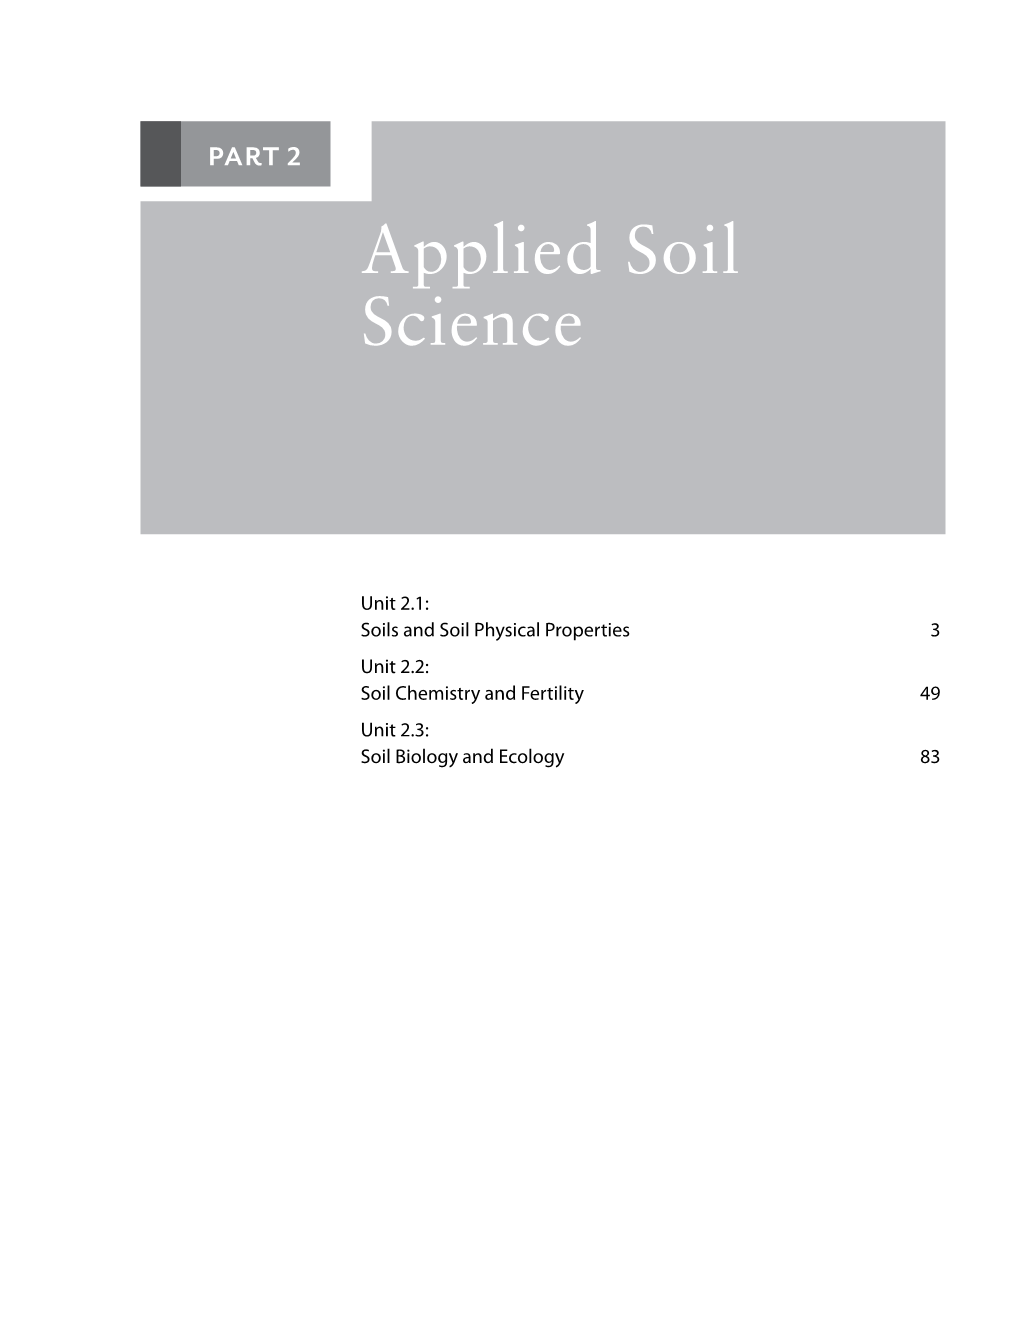 Applied Soil Science